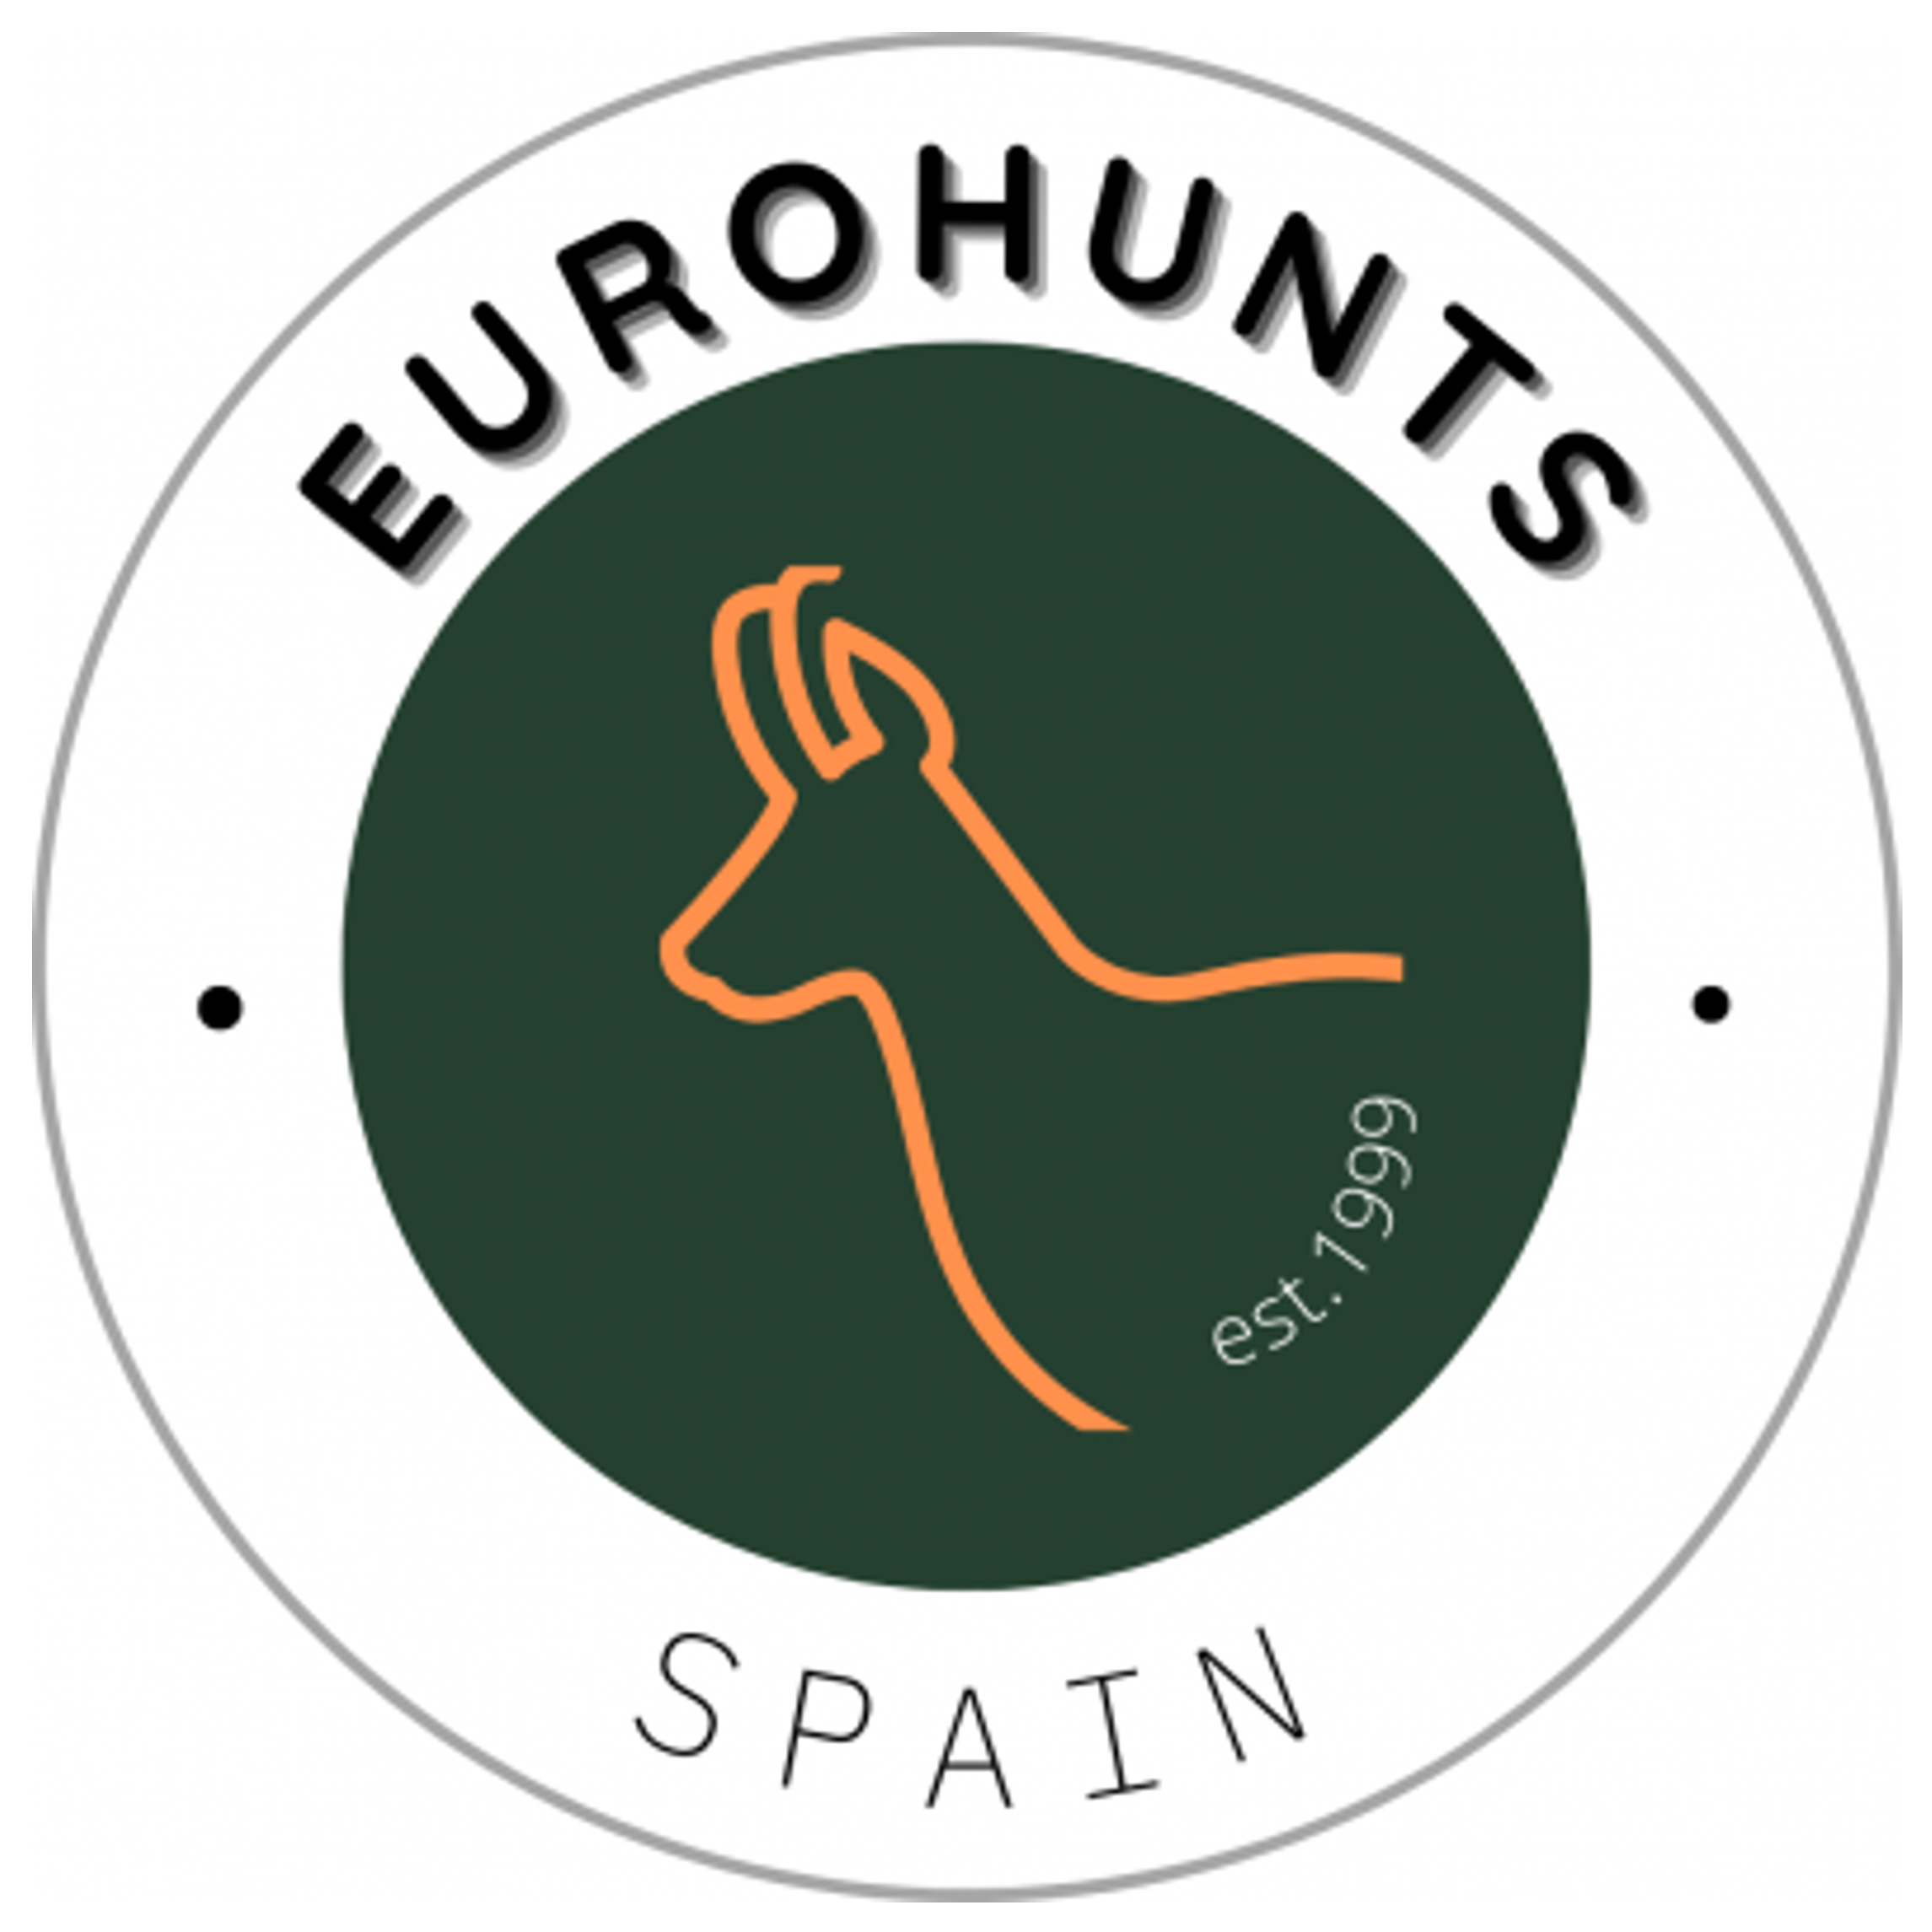 Eurohunts